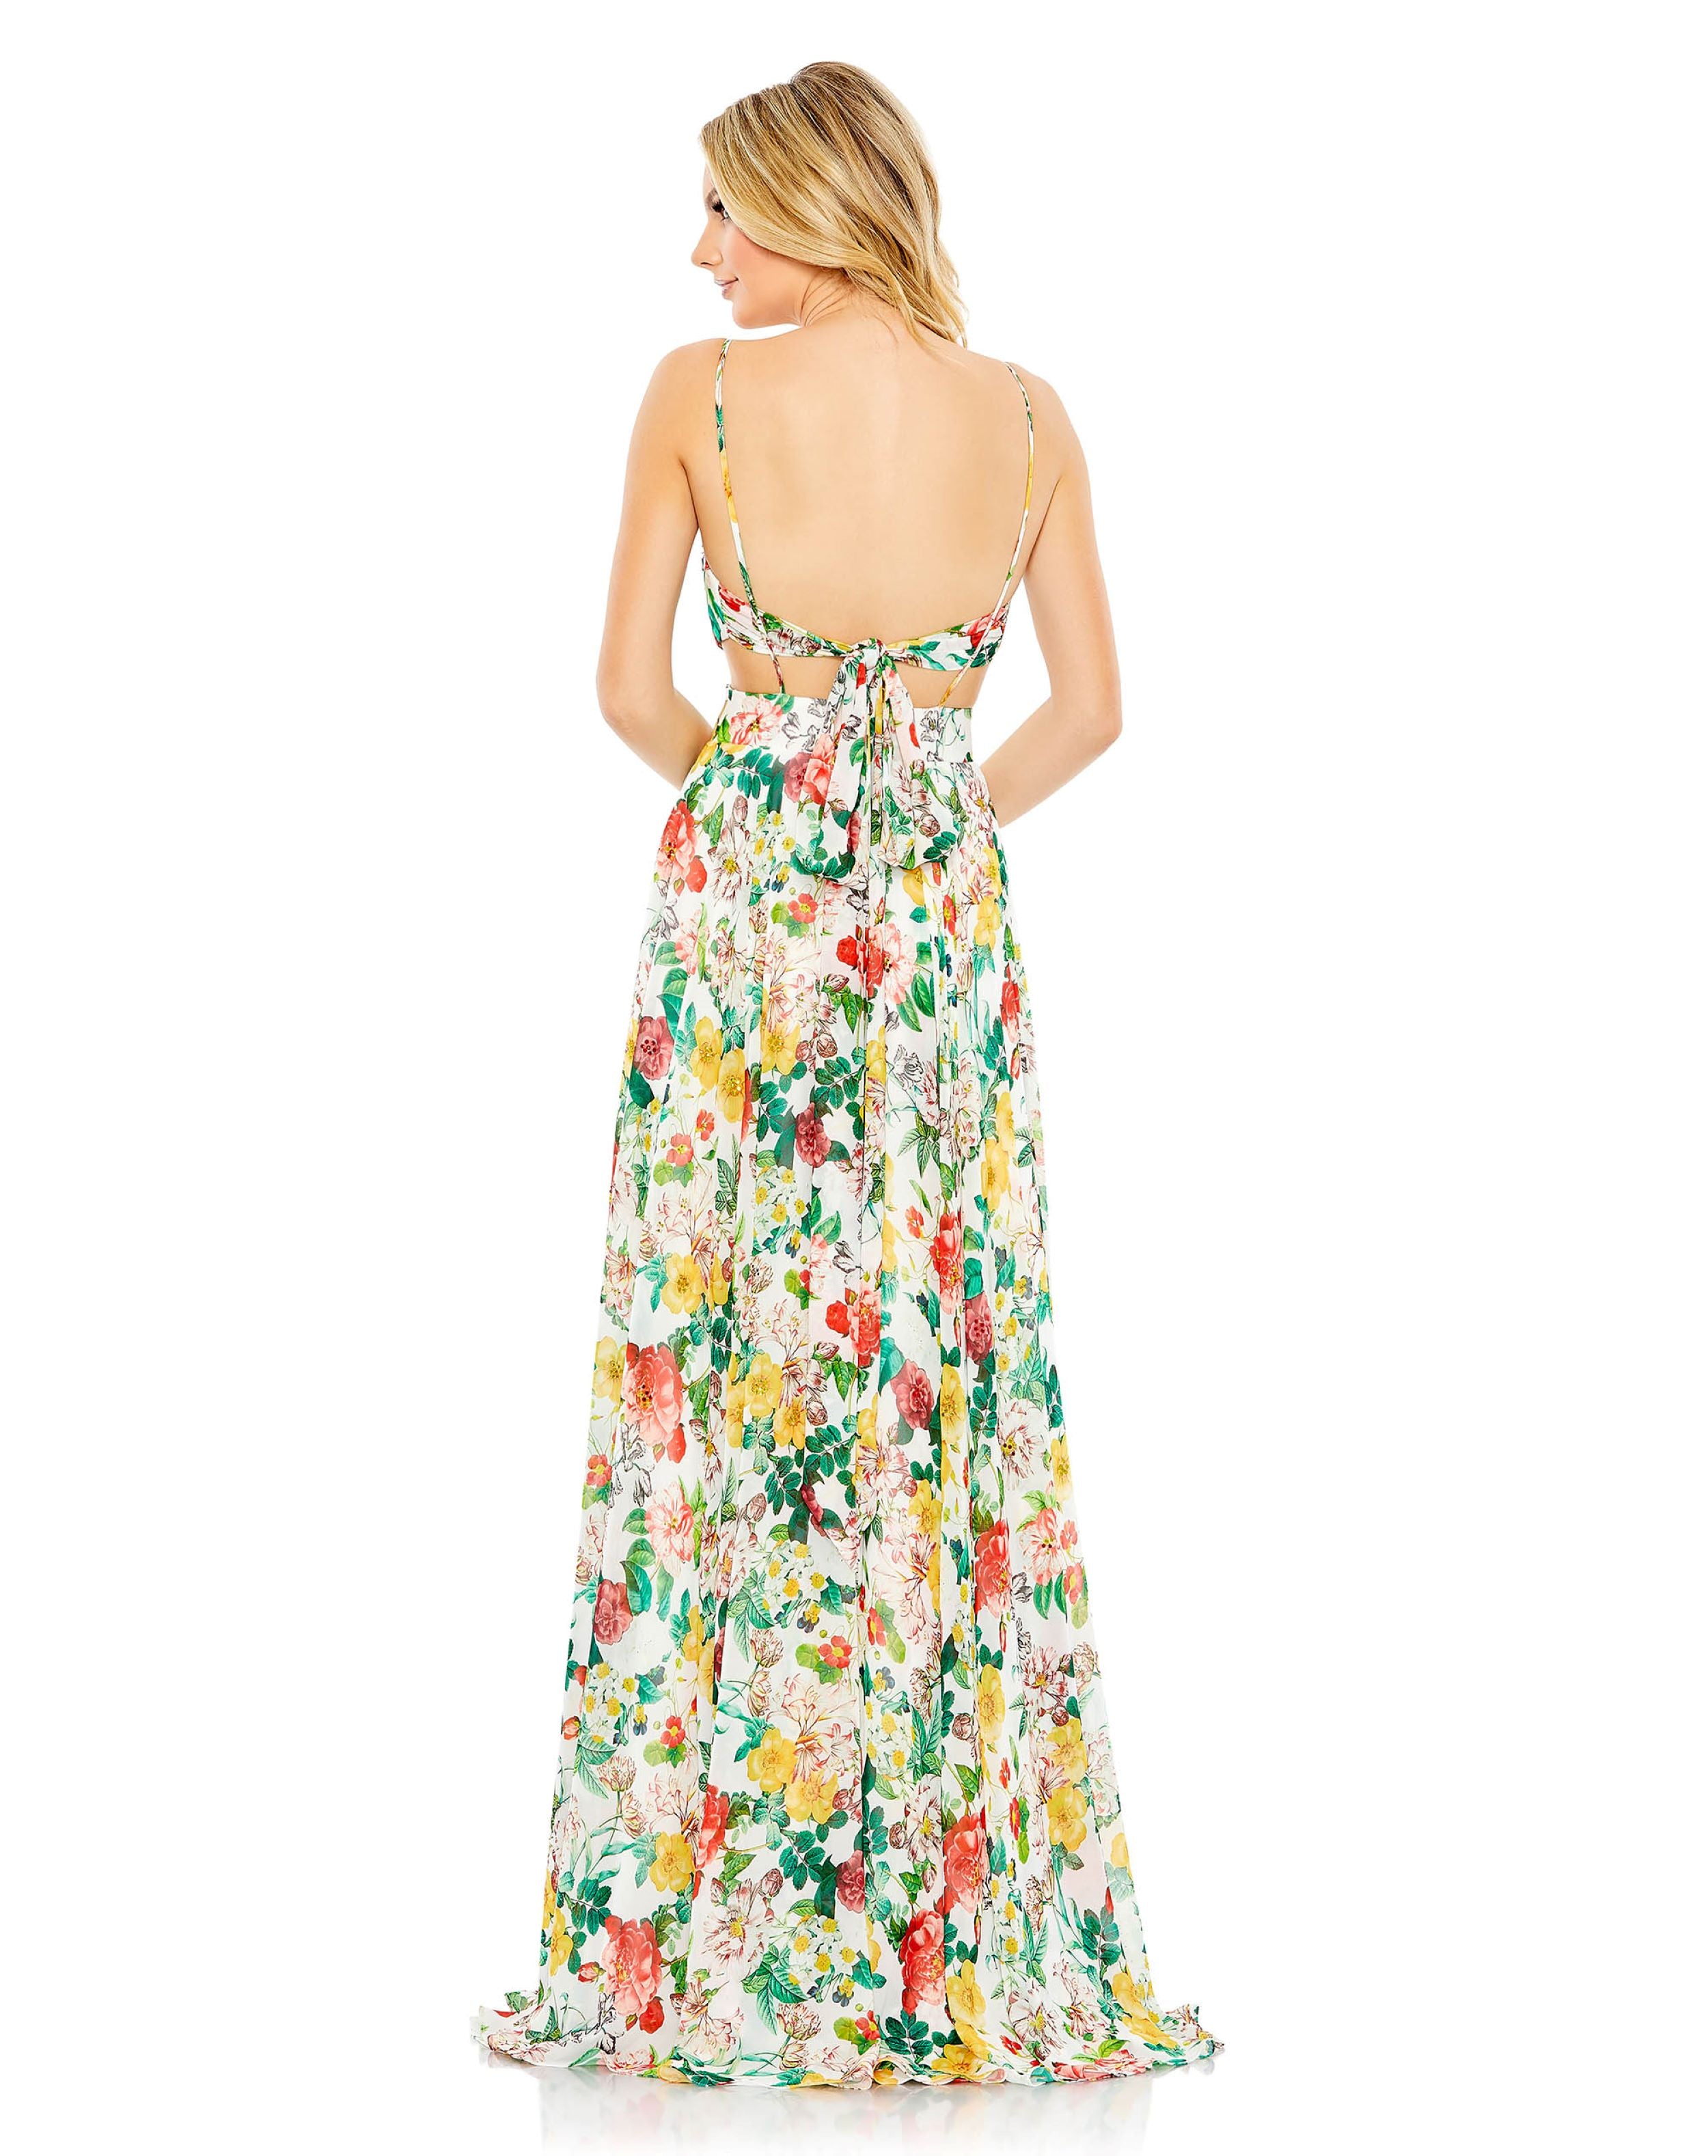 Floral Print Cut Out Soft Tie Back A Line Gown | Sample | Sz. 4